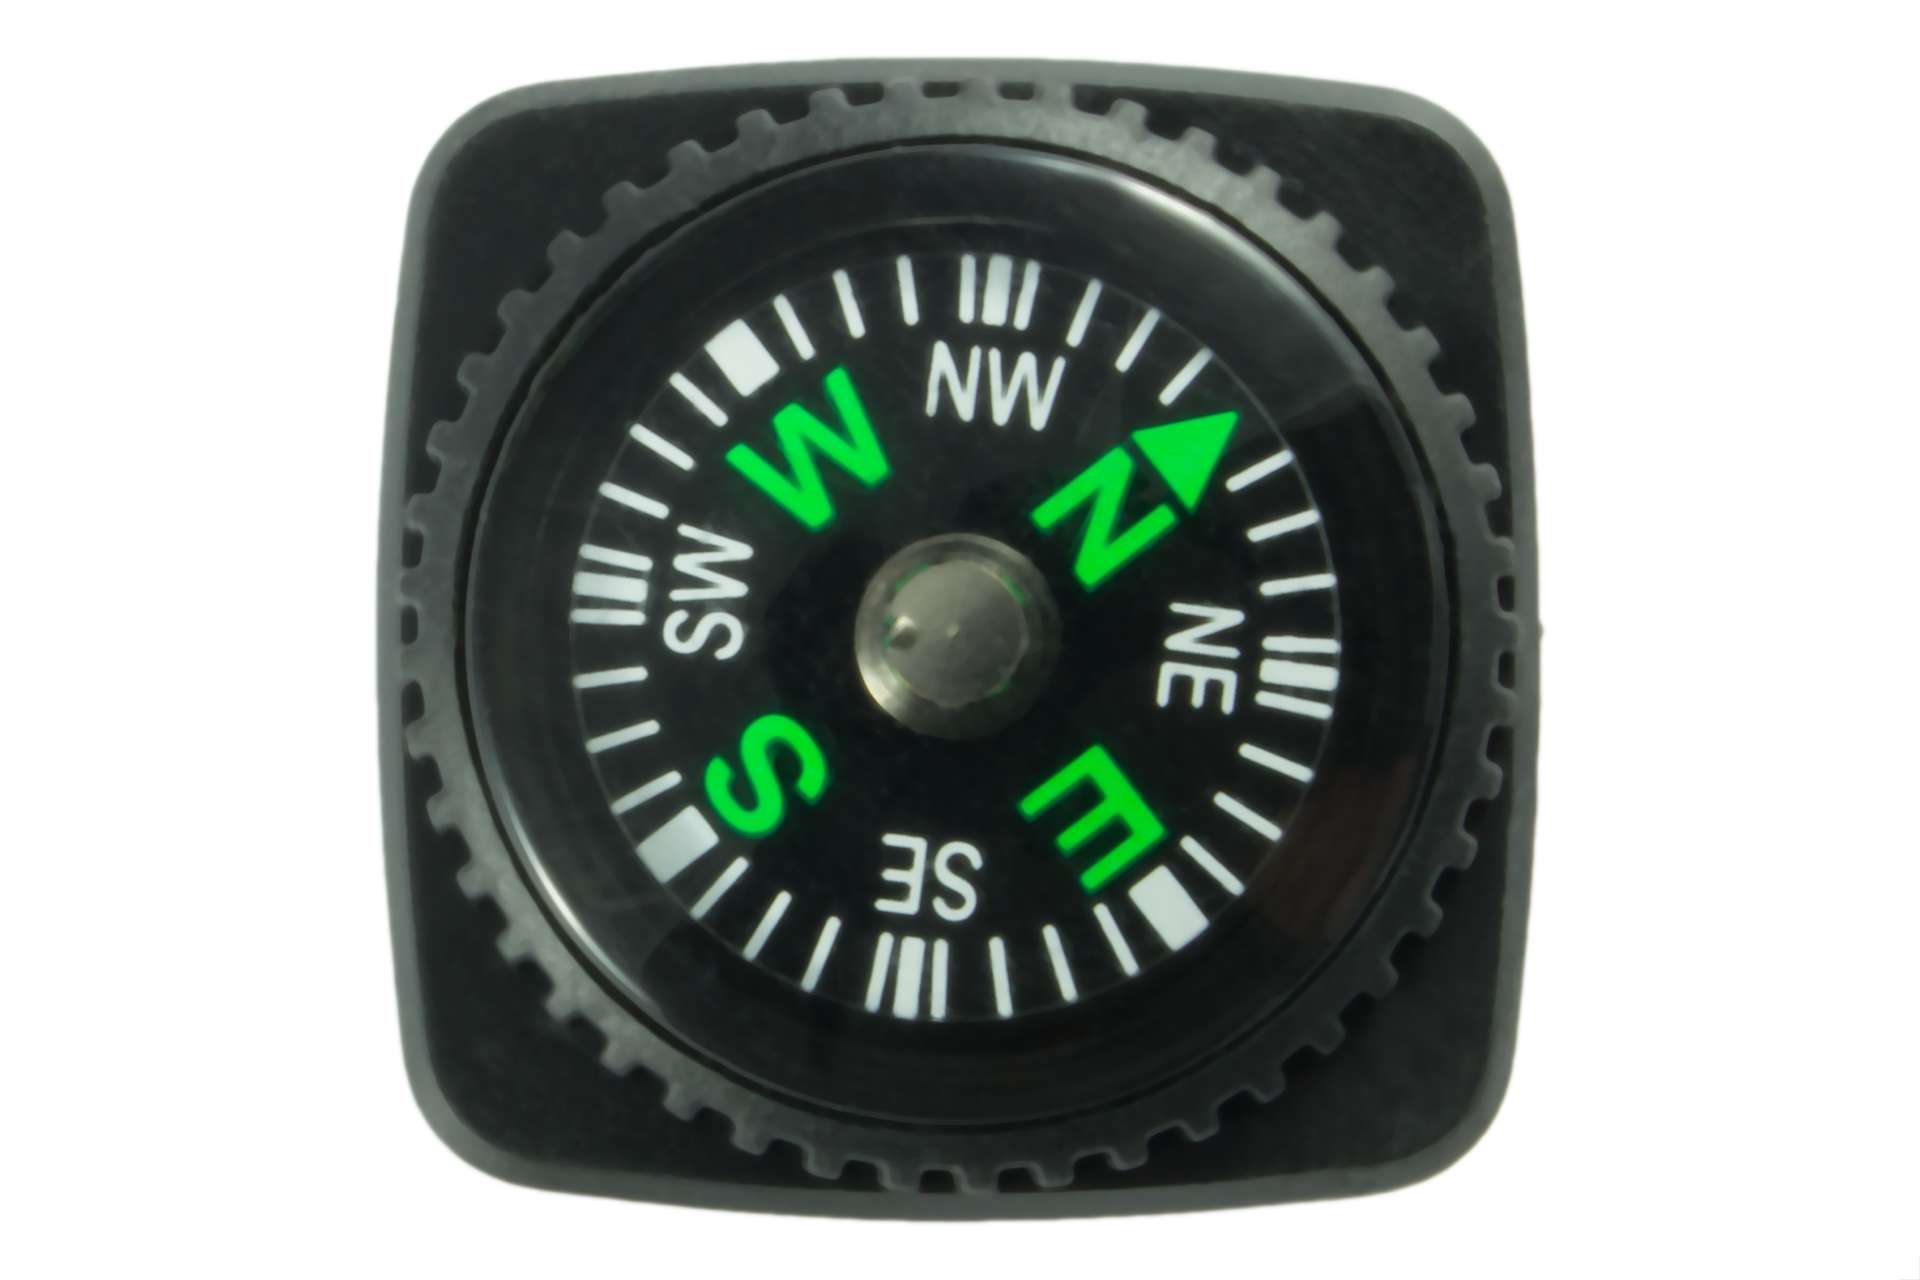 Kompass Details Up